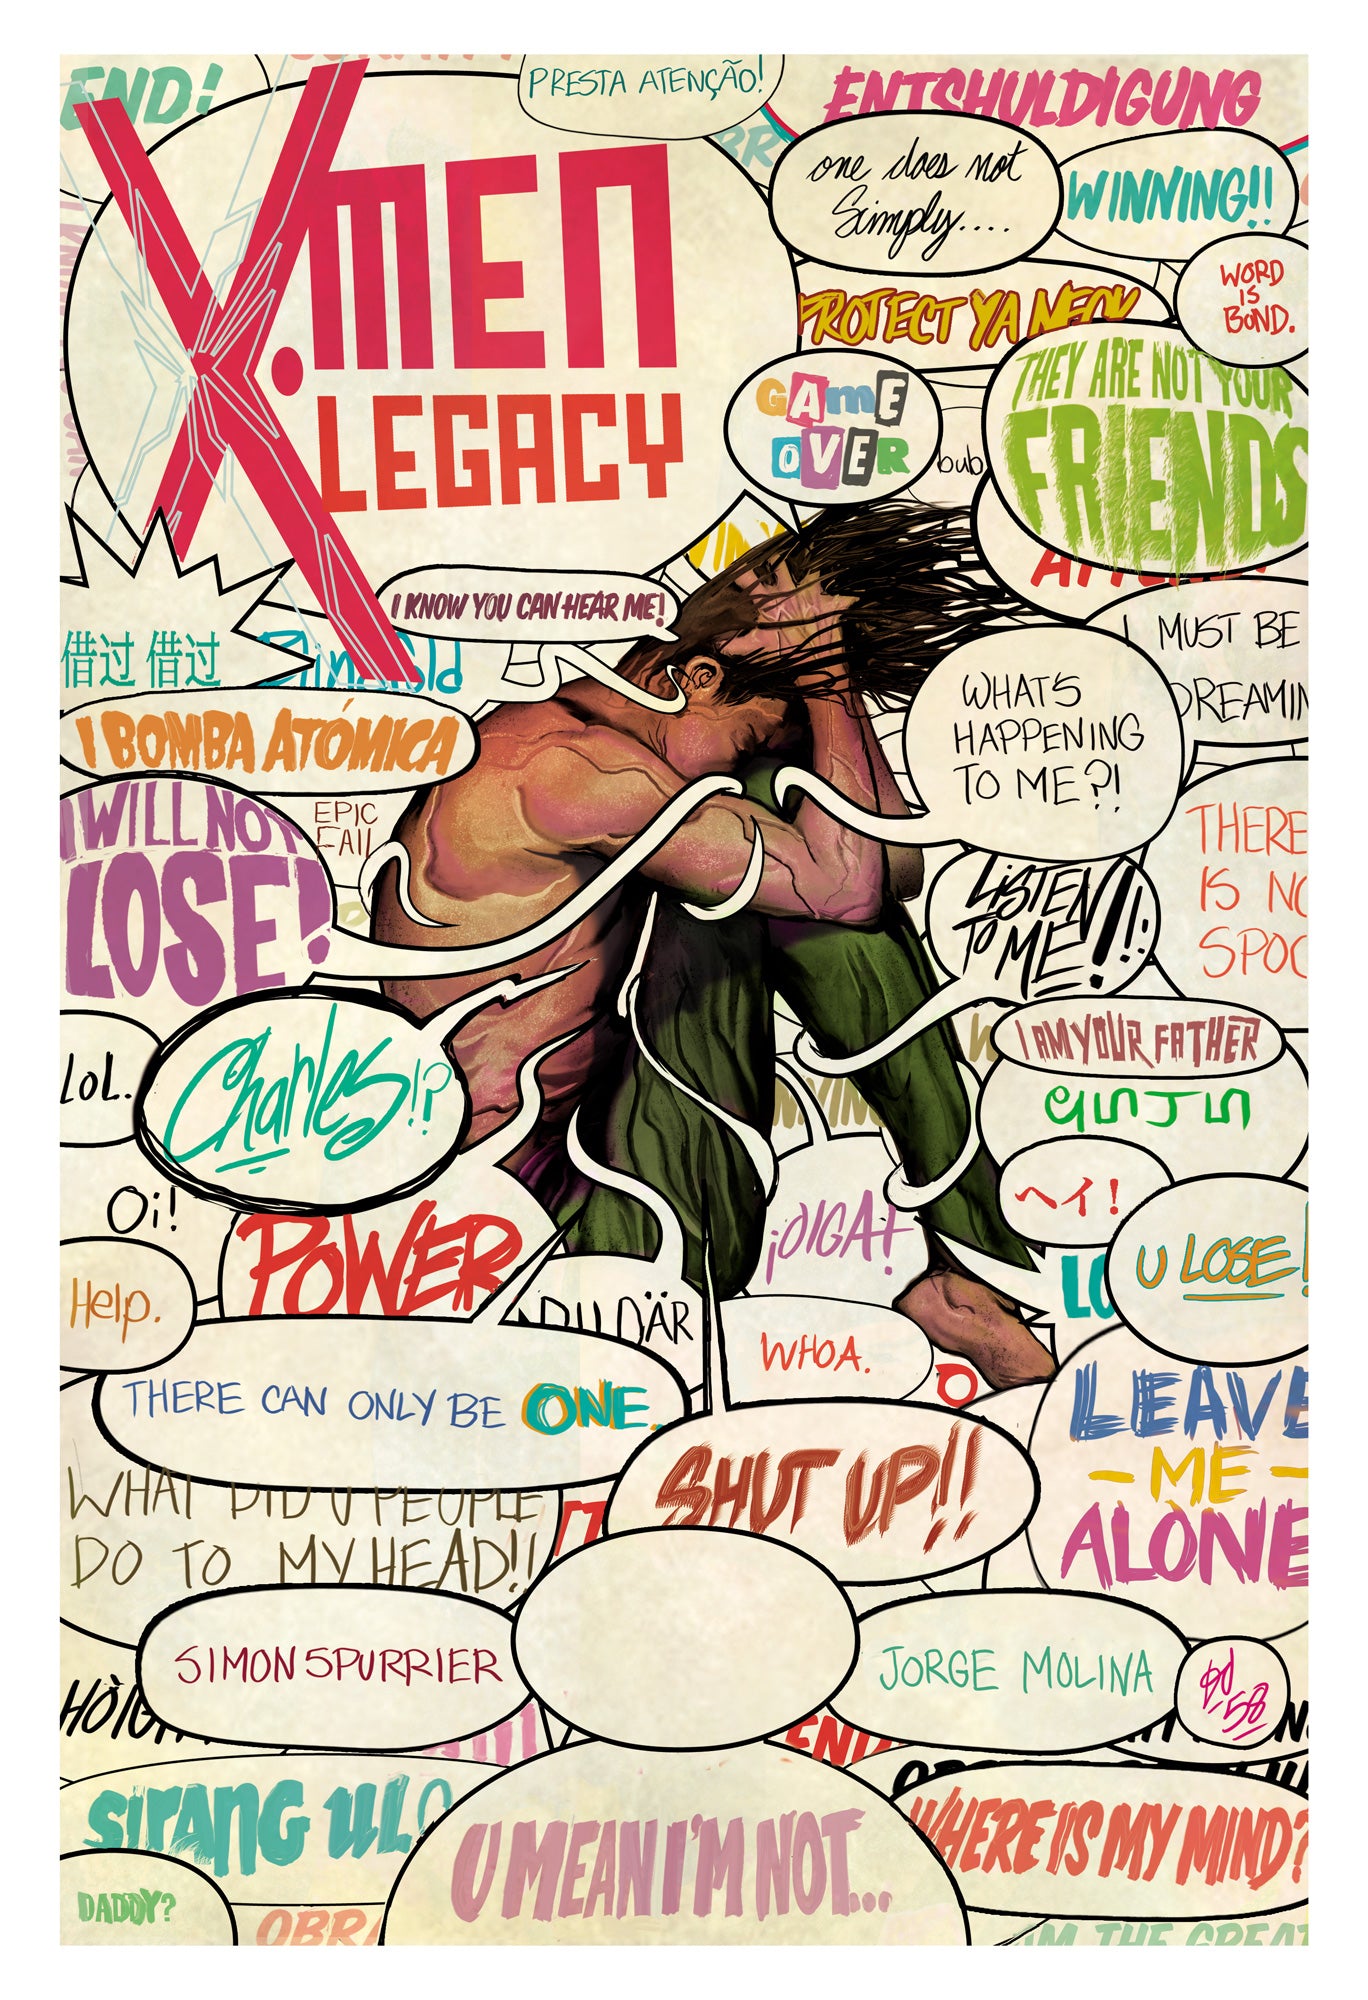 X-Men Legacy #6 13" x 19" Print